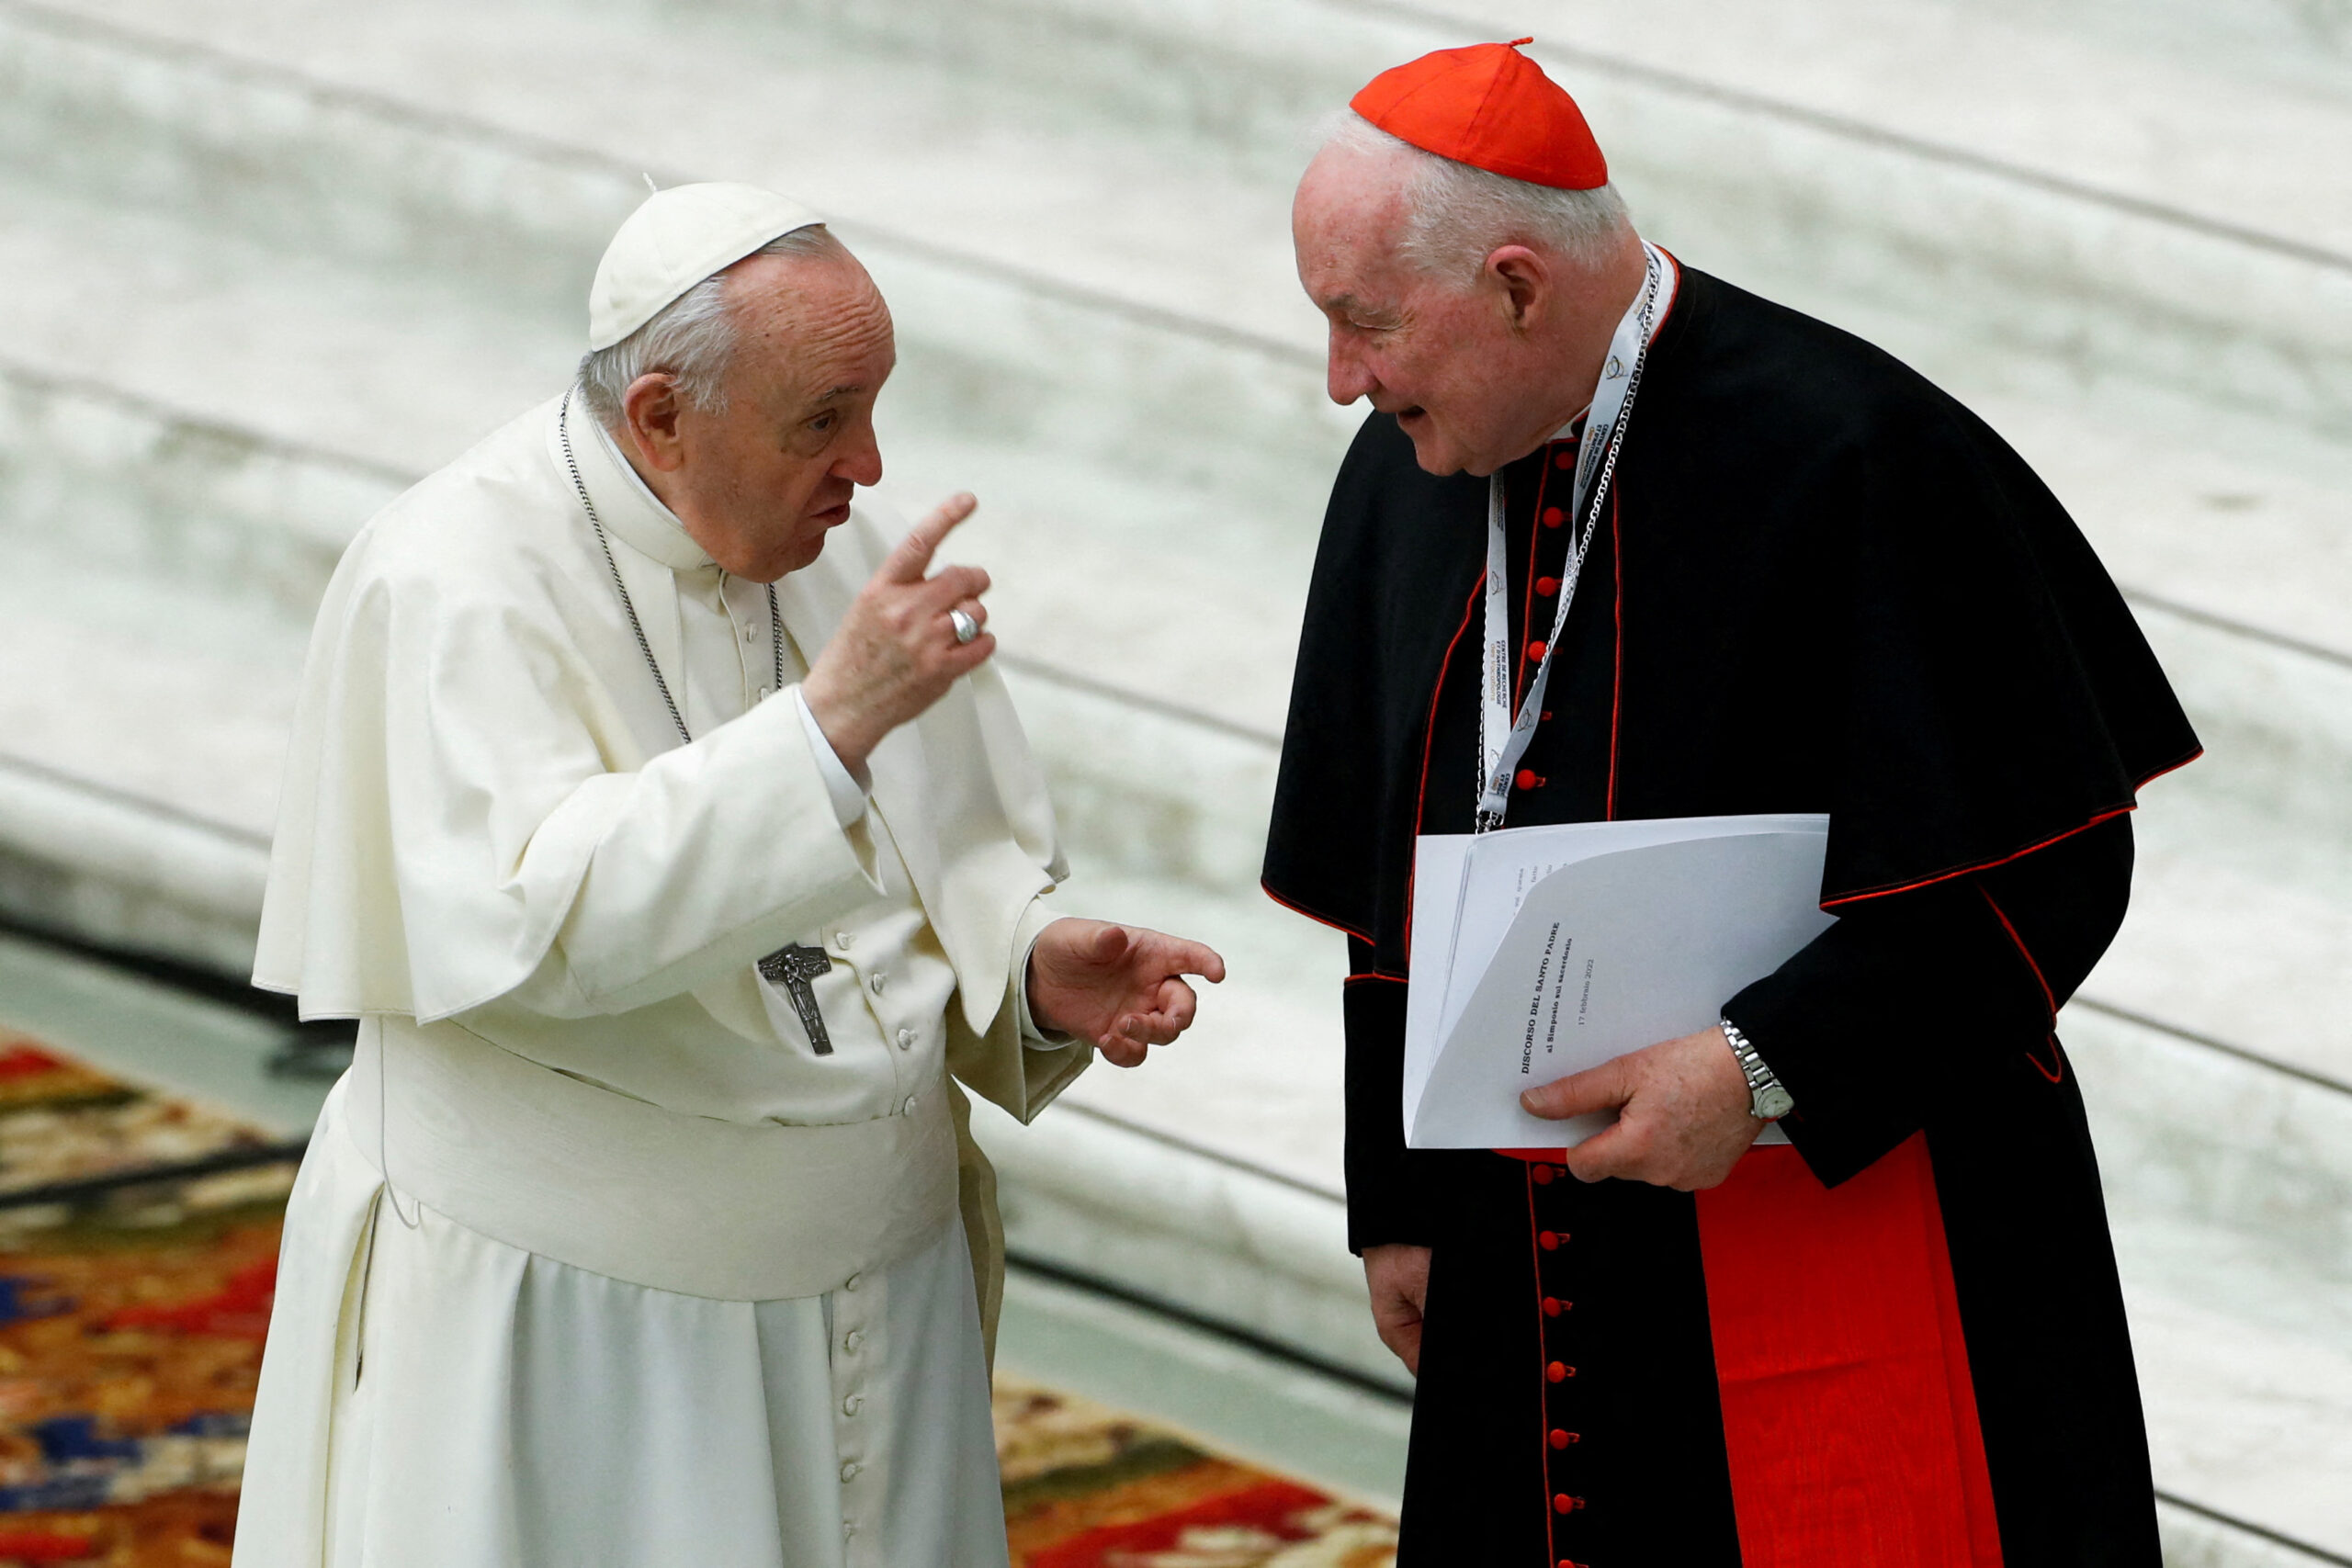 کاردینال همراه پاپ فرانسیس در سفر ماه گذشته به کانادا، مارک اوئلت به تجاوز جنسی متهم شد